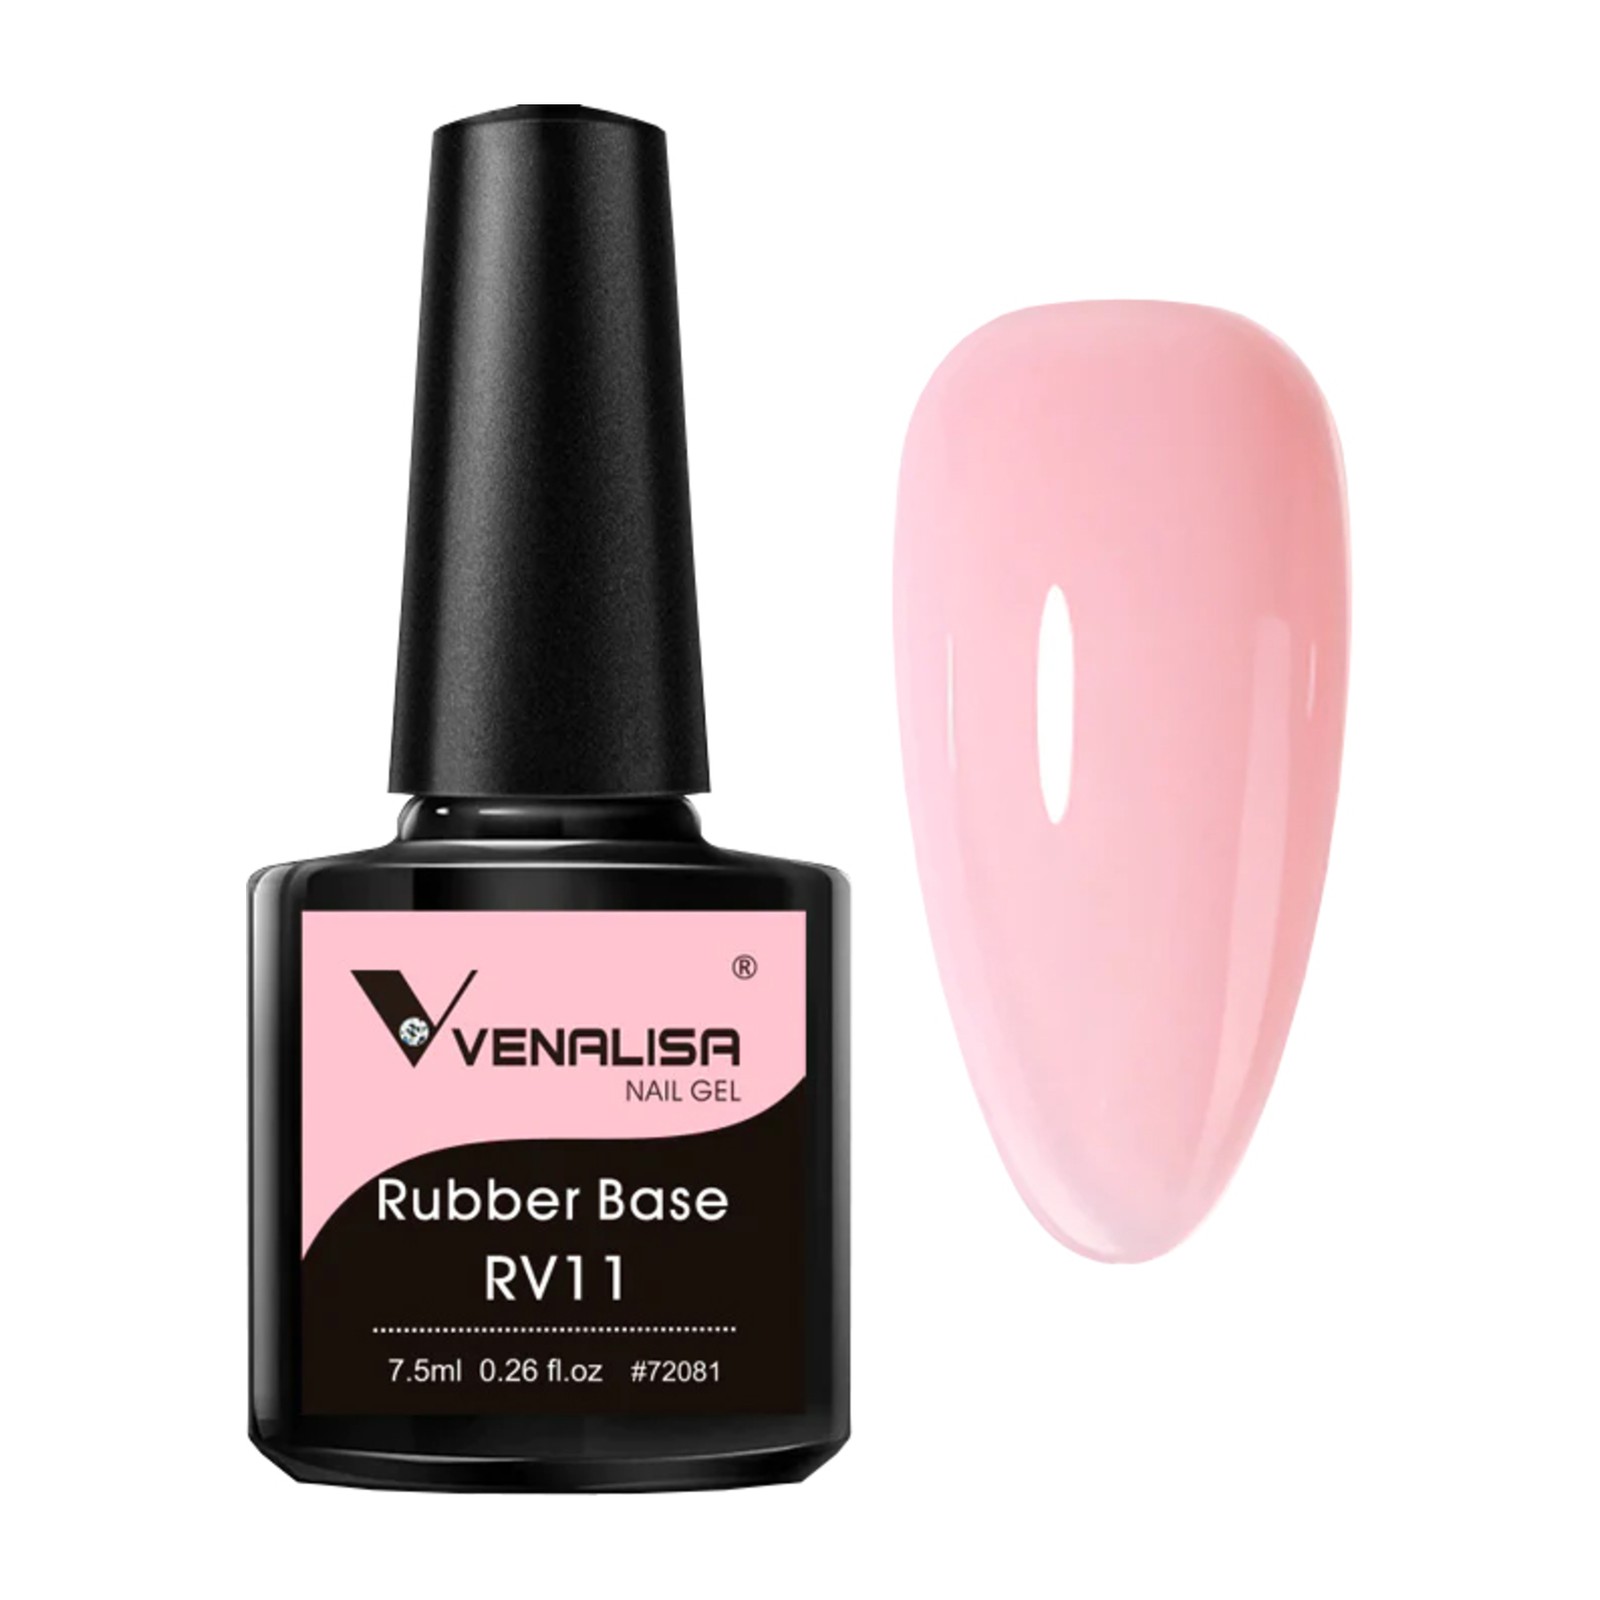 Venalisa - Rubber Base RV11 - 7.5ml